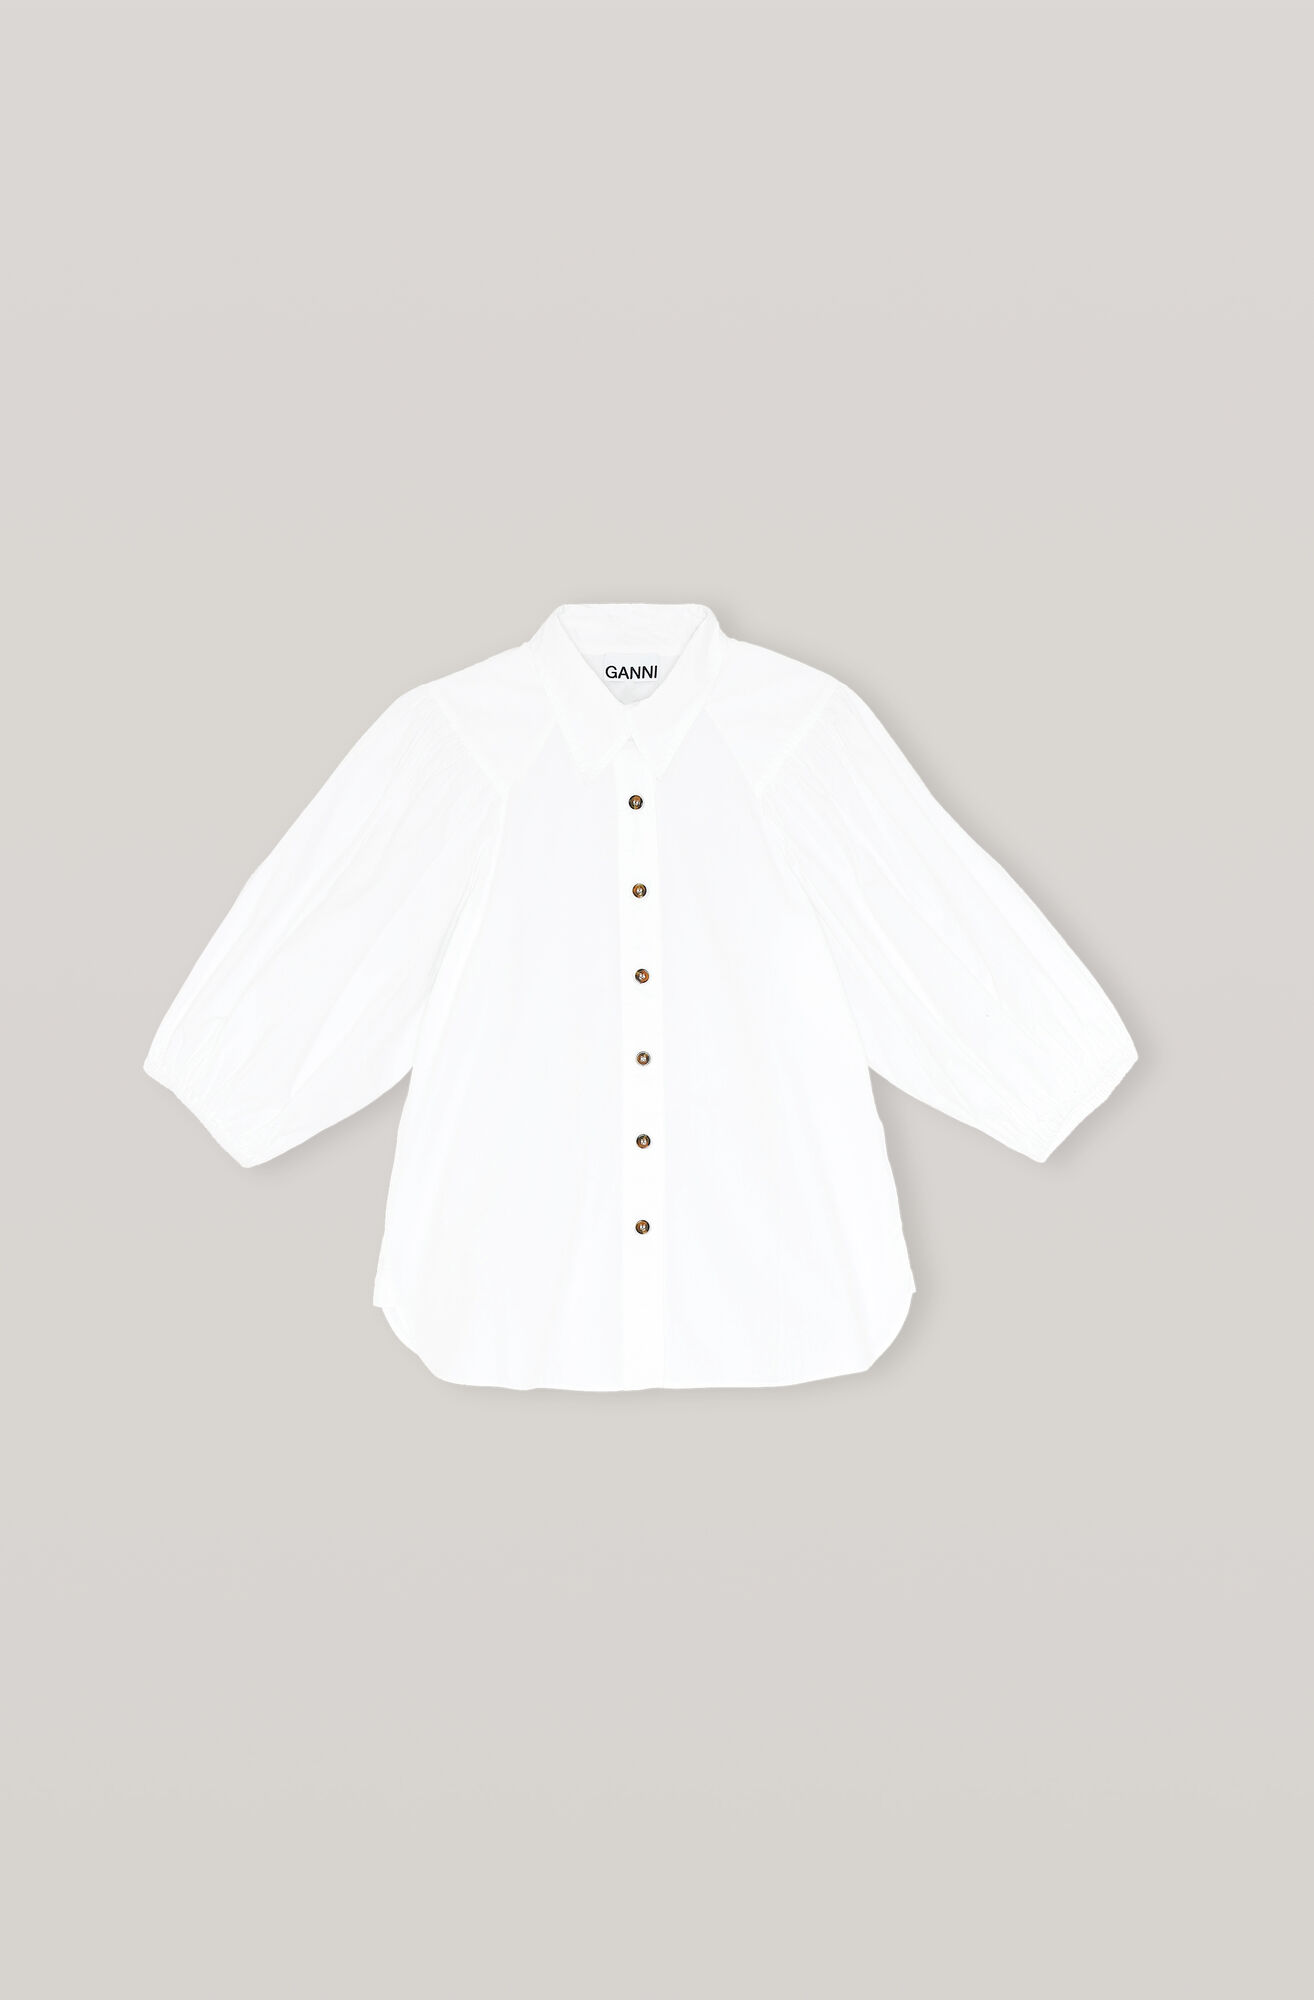 Boat Neck Collared Poplin Skjorte, Cotton, in colour Bright White - 1 - GANNI